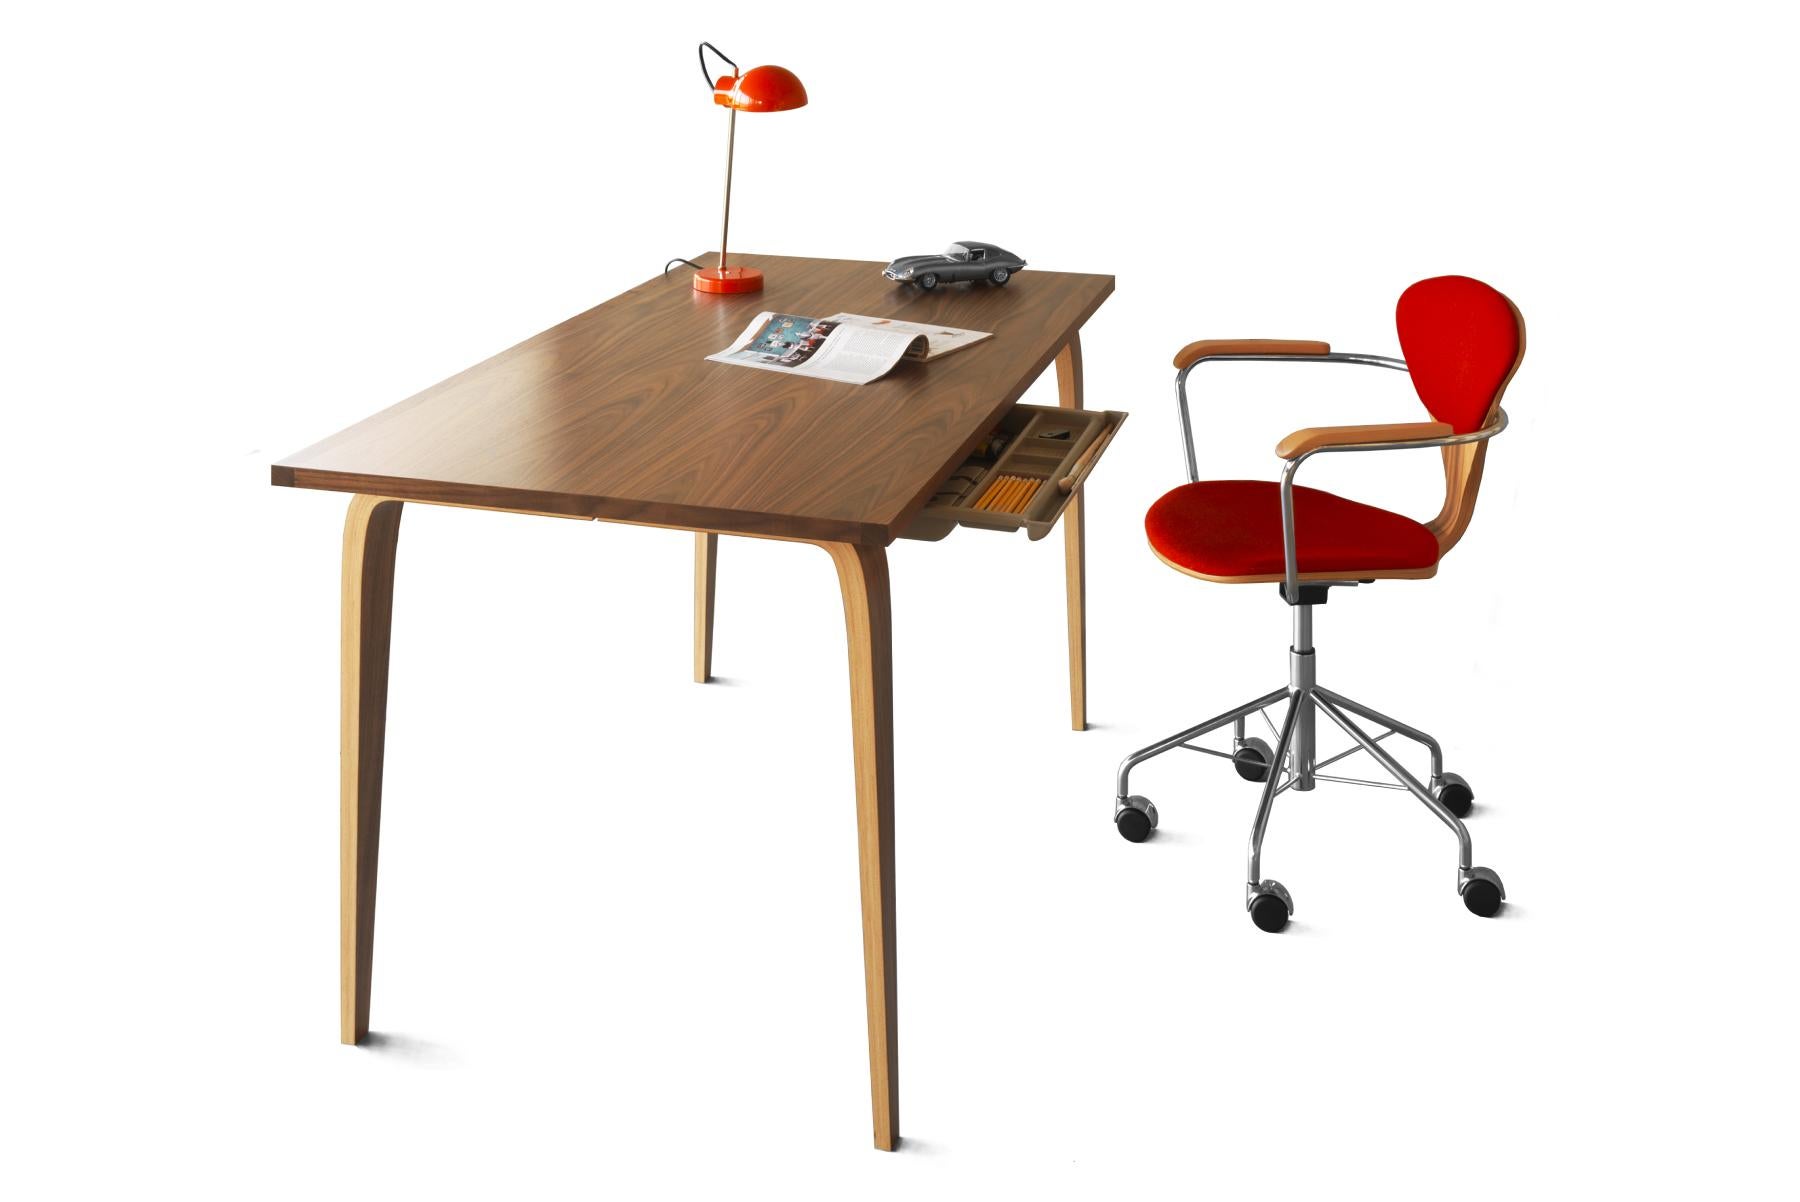 Der neue Studio-Schreibtisch ist für Designer konzipiert. Erhältlich in zwei Größen, passend für Ihren Arbeitsbereich. Die Konstruktion aus kreuzweise verleimtem Sperrholz und Massivholzkanten ist langlebig. Enthält eine Schublade für Stifte.